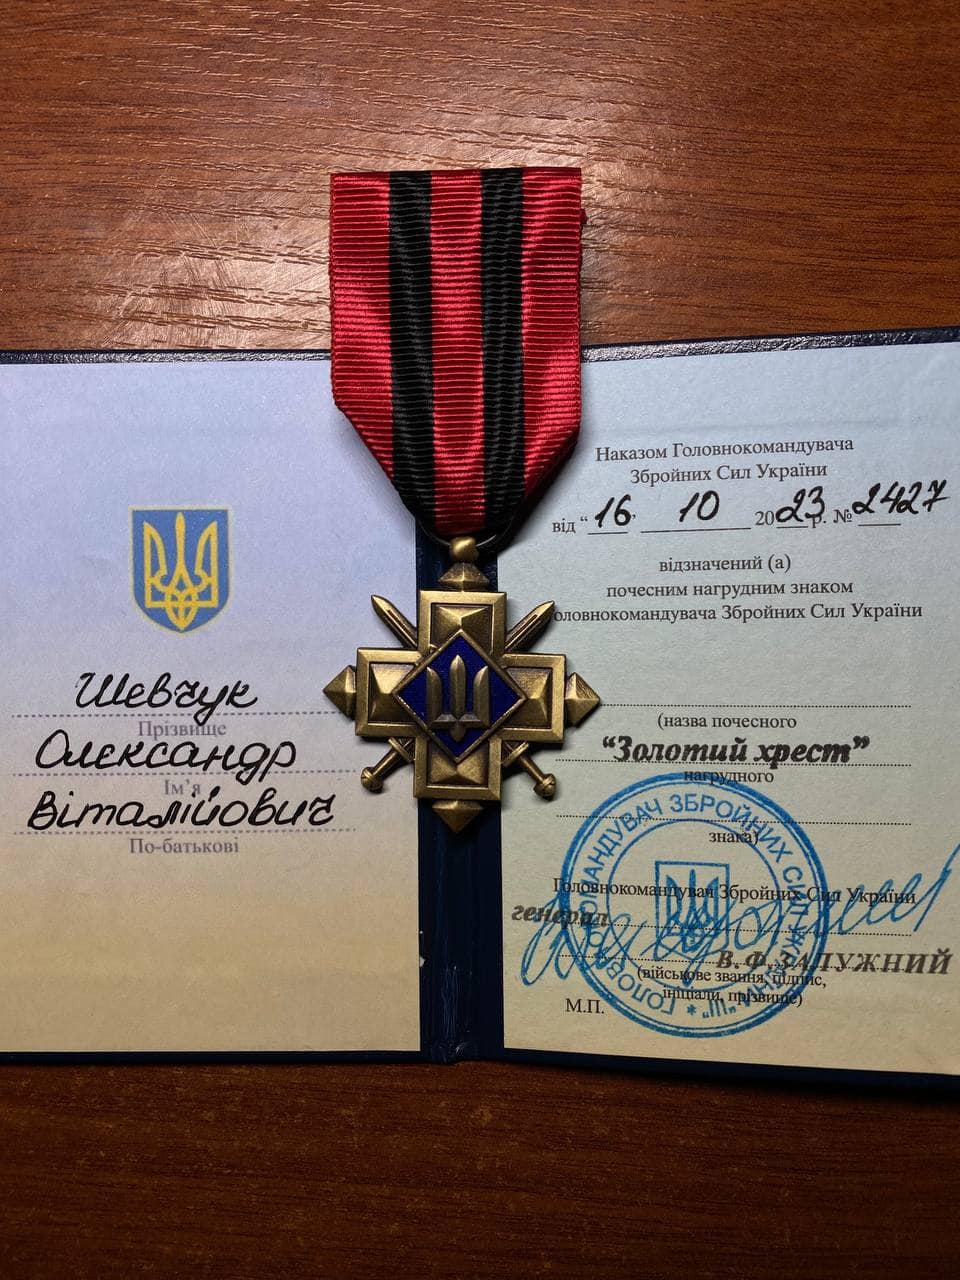 27-річного військового з Війтівецької громади нагородили "Золотим хрестом"